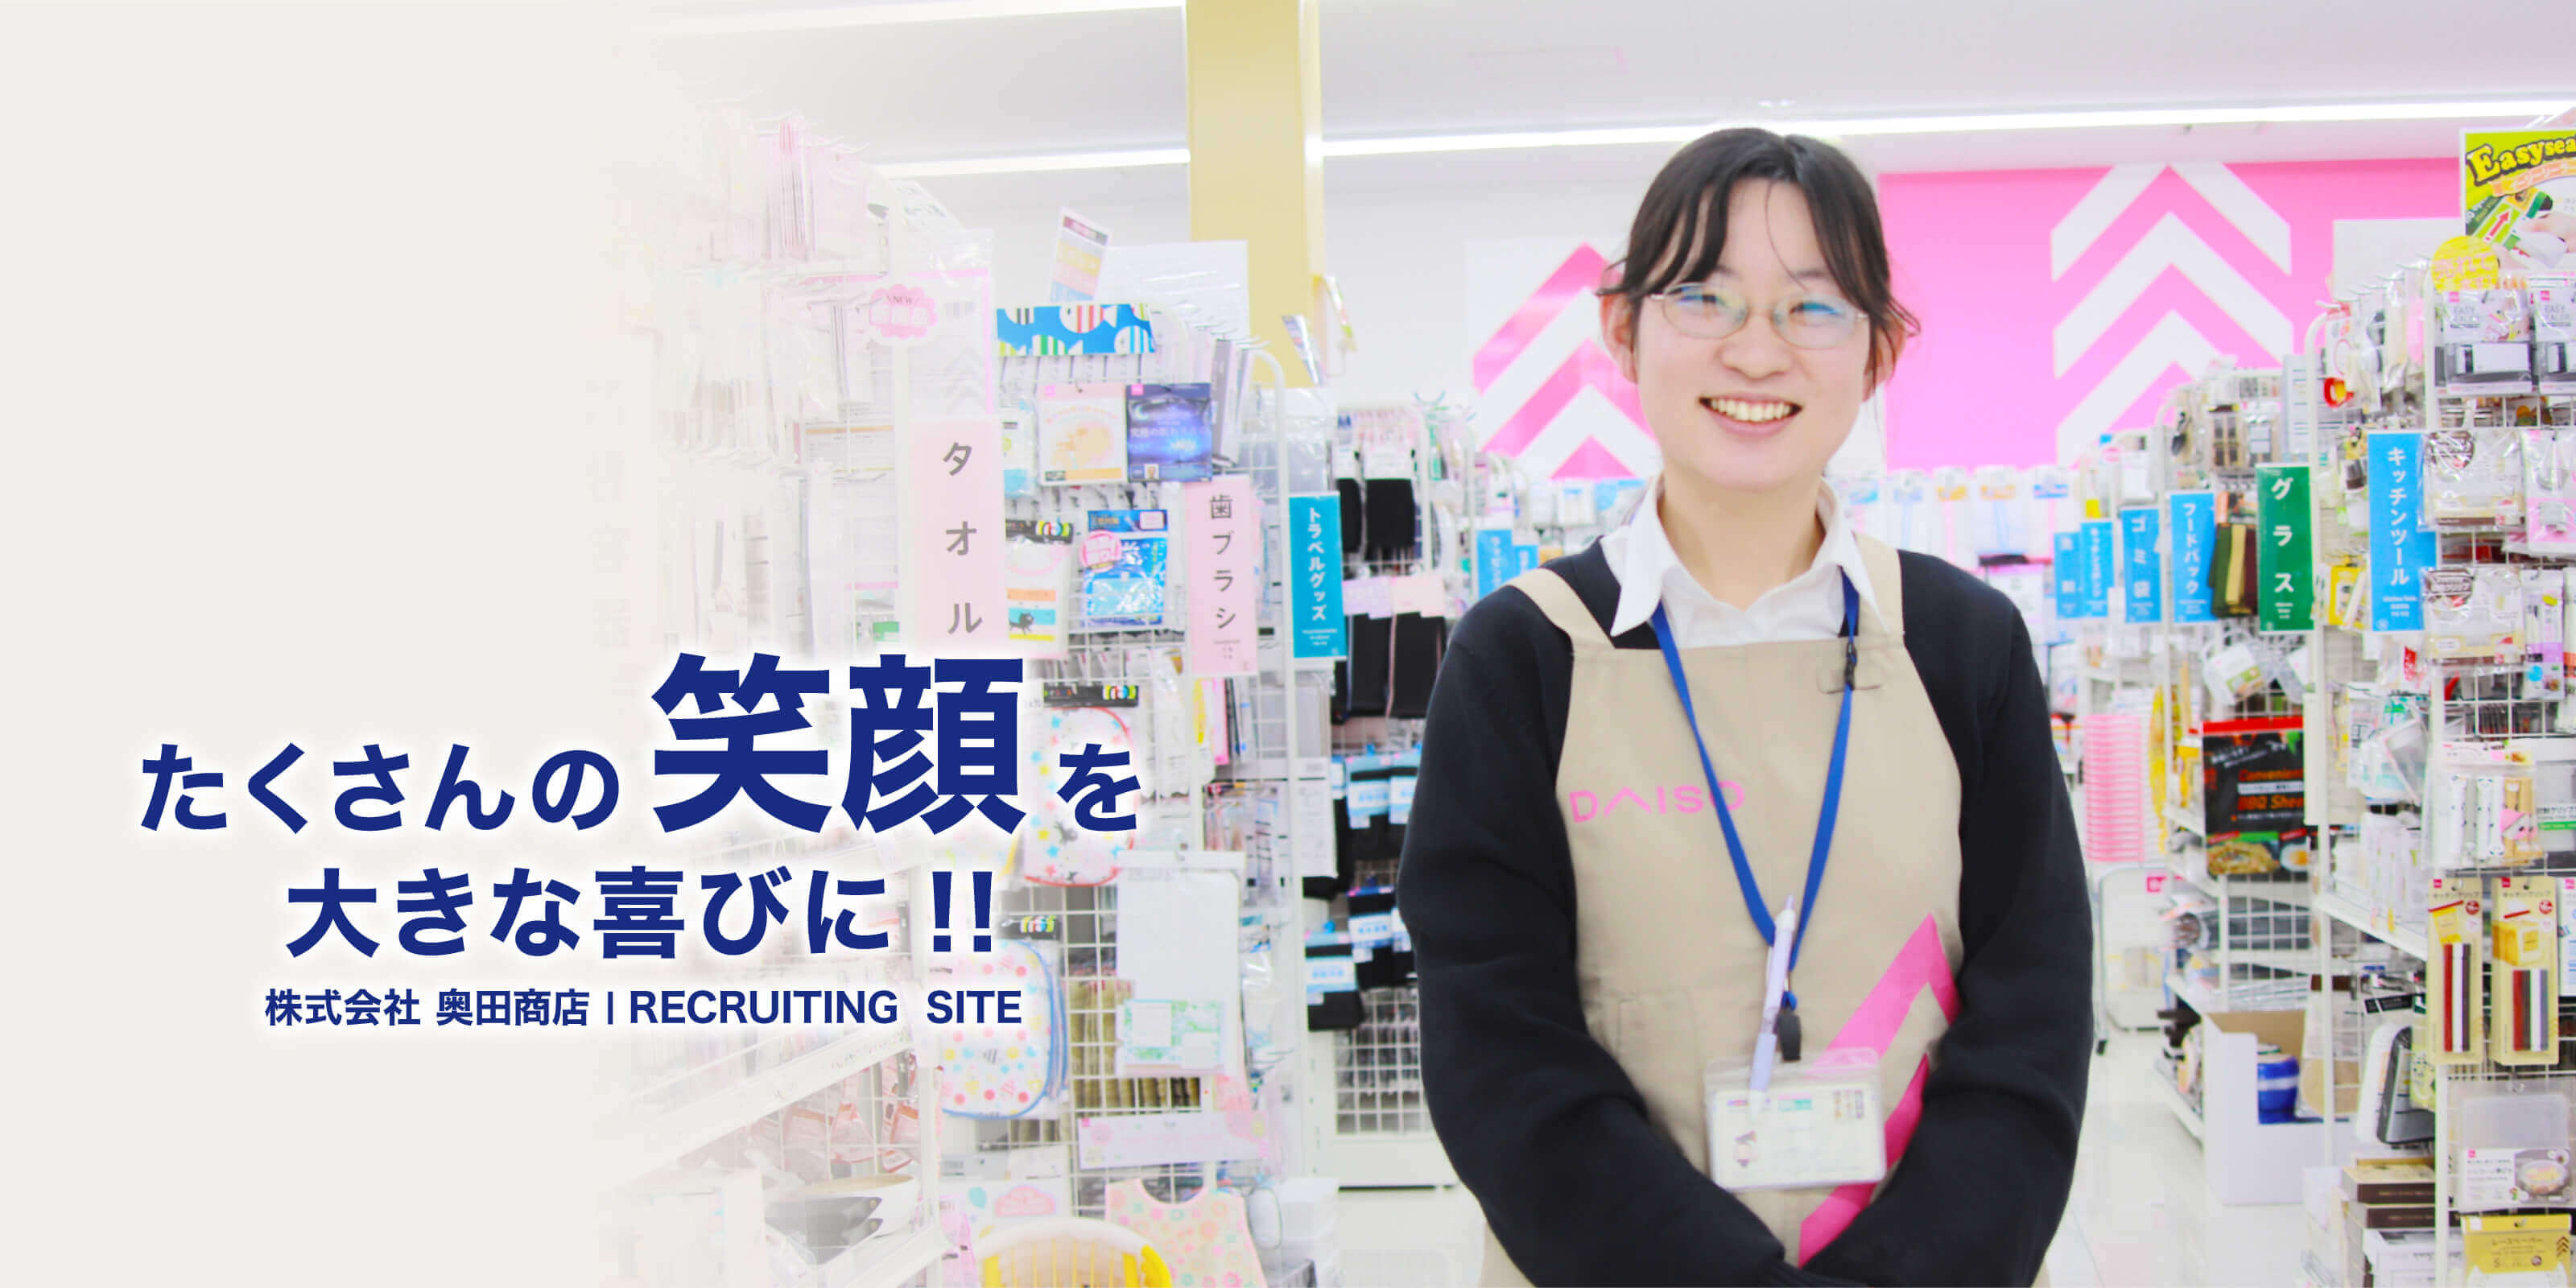 たくさんの笑顔を大きな喜びに!! 株式会社 奥田商店 recruiting site